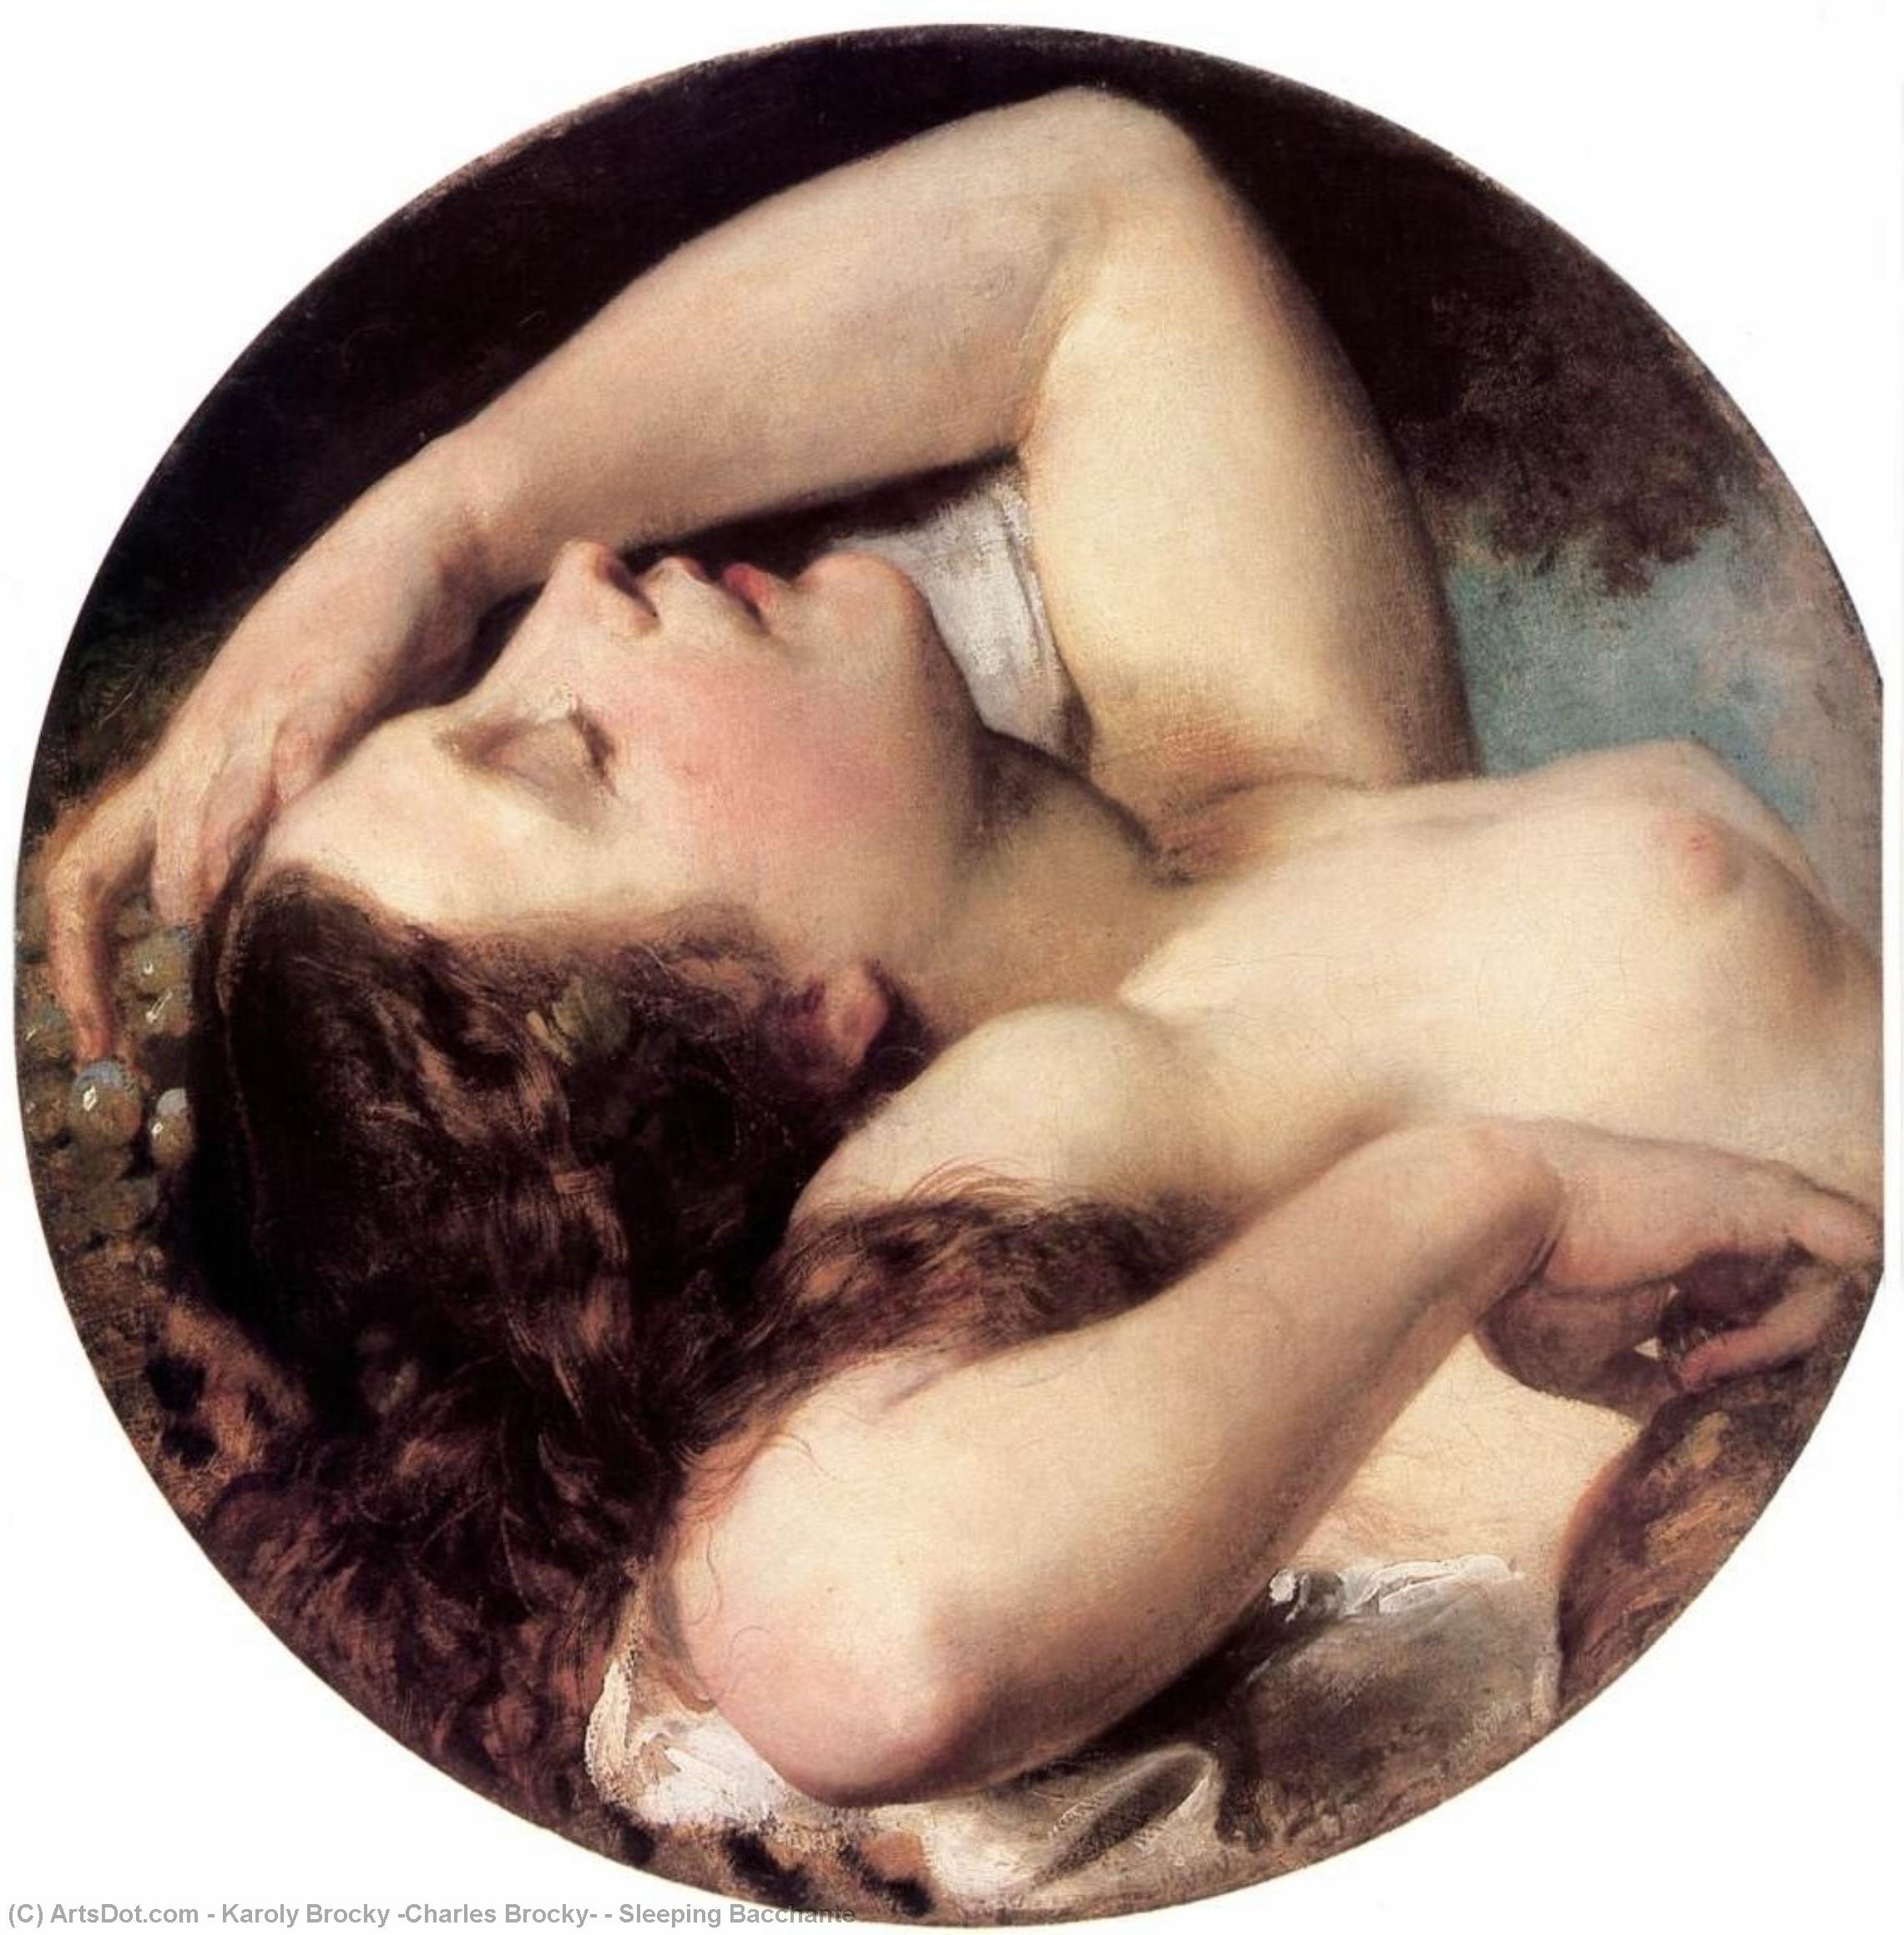 WikiOO.org - Enciklopedija likovnih umjetnosti - Slikarstvo, umjetnička djela Karoly Brocky (Charles Brocky) - Sleeping Bacchante